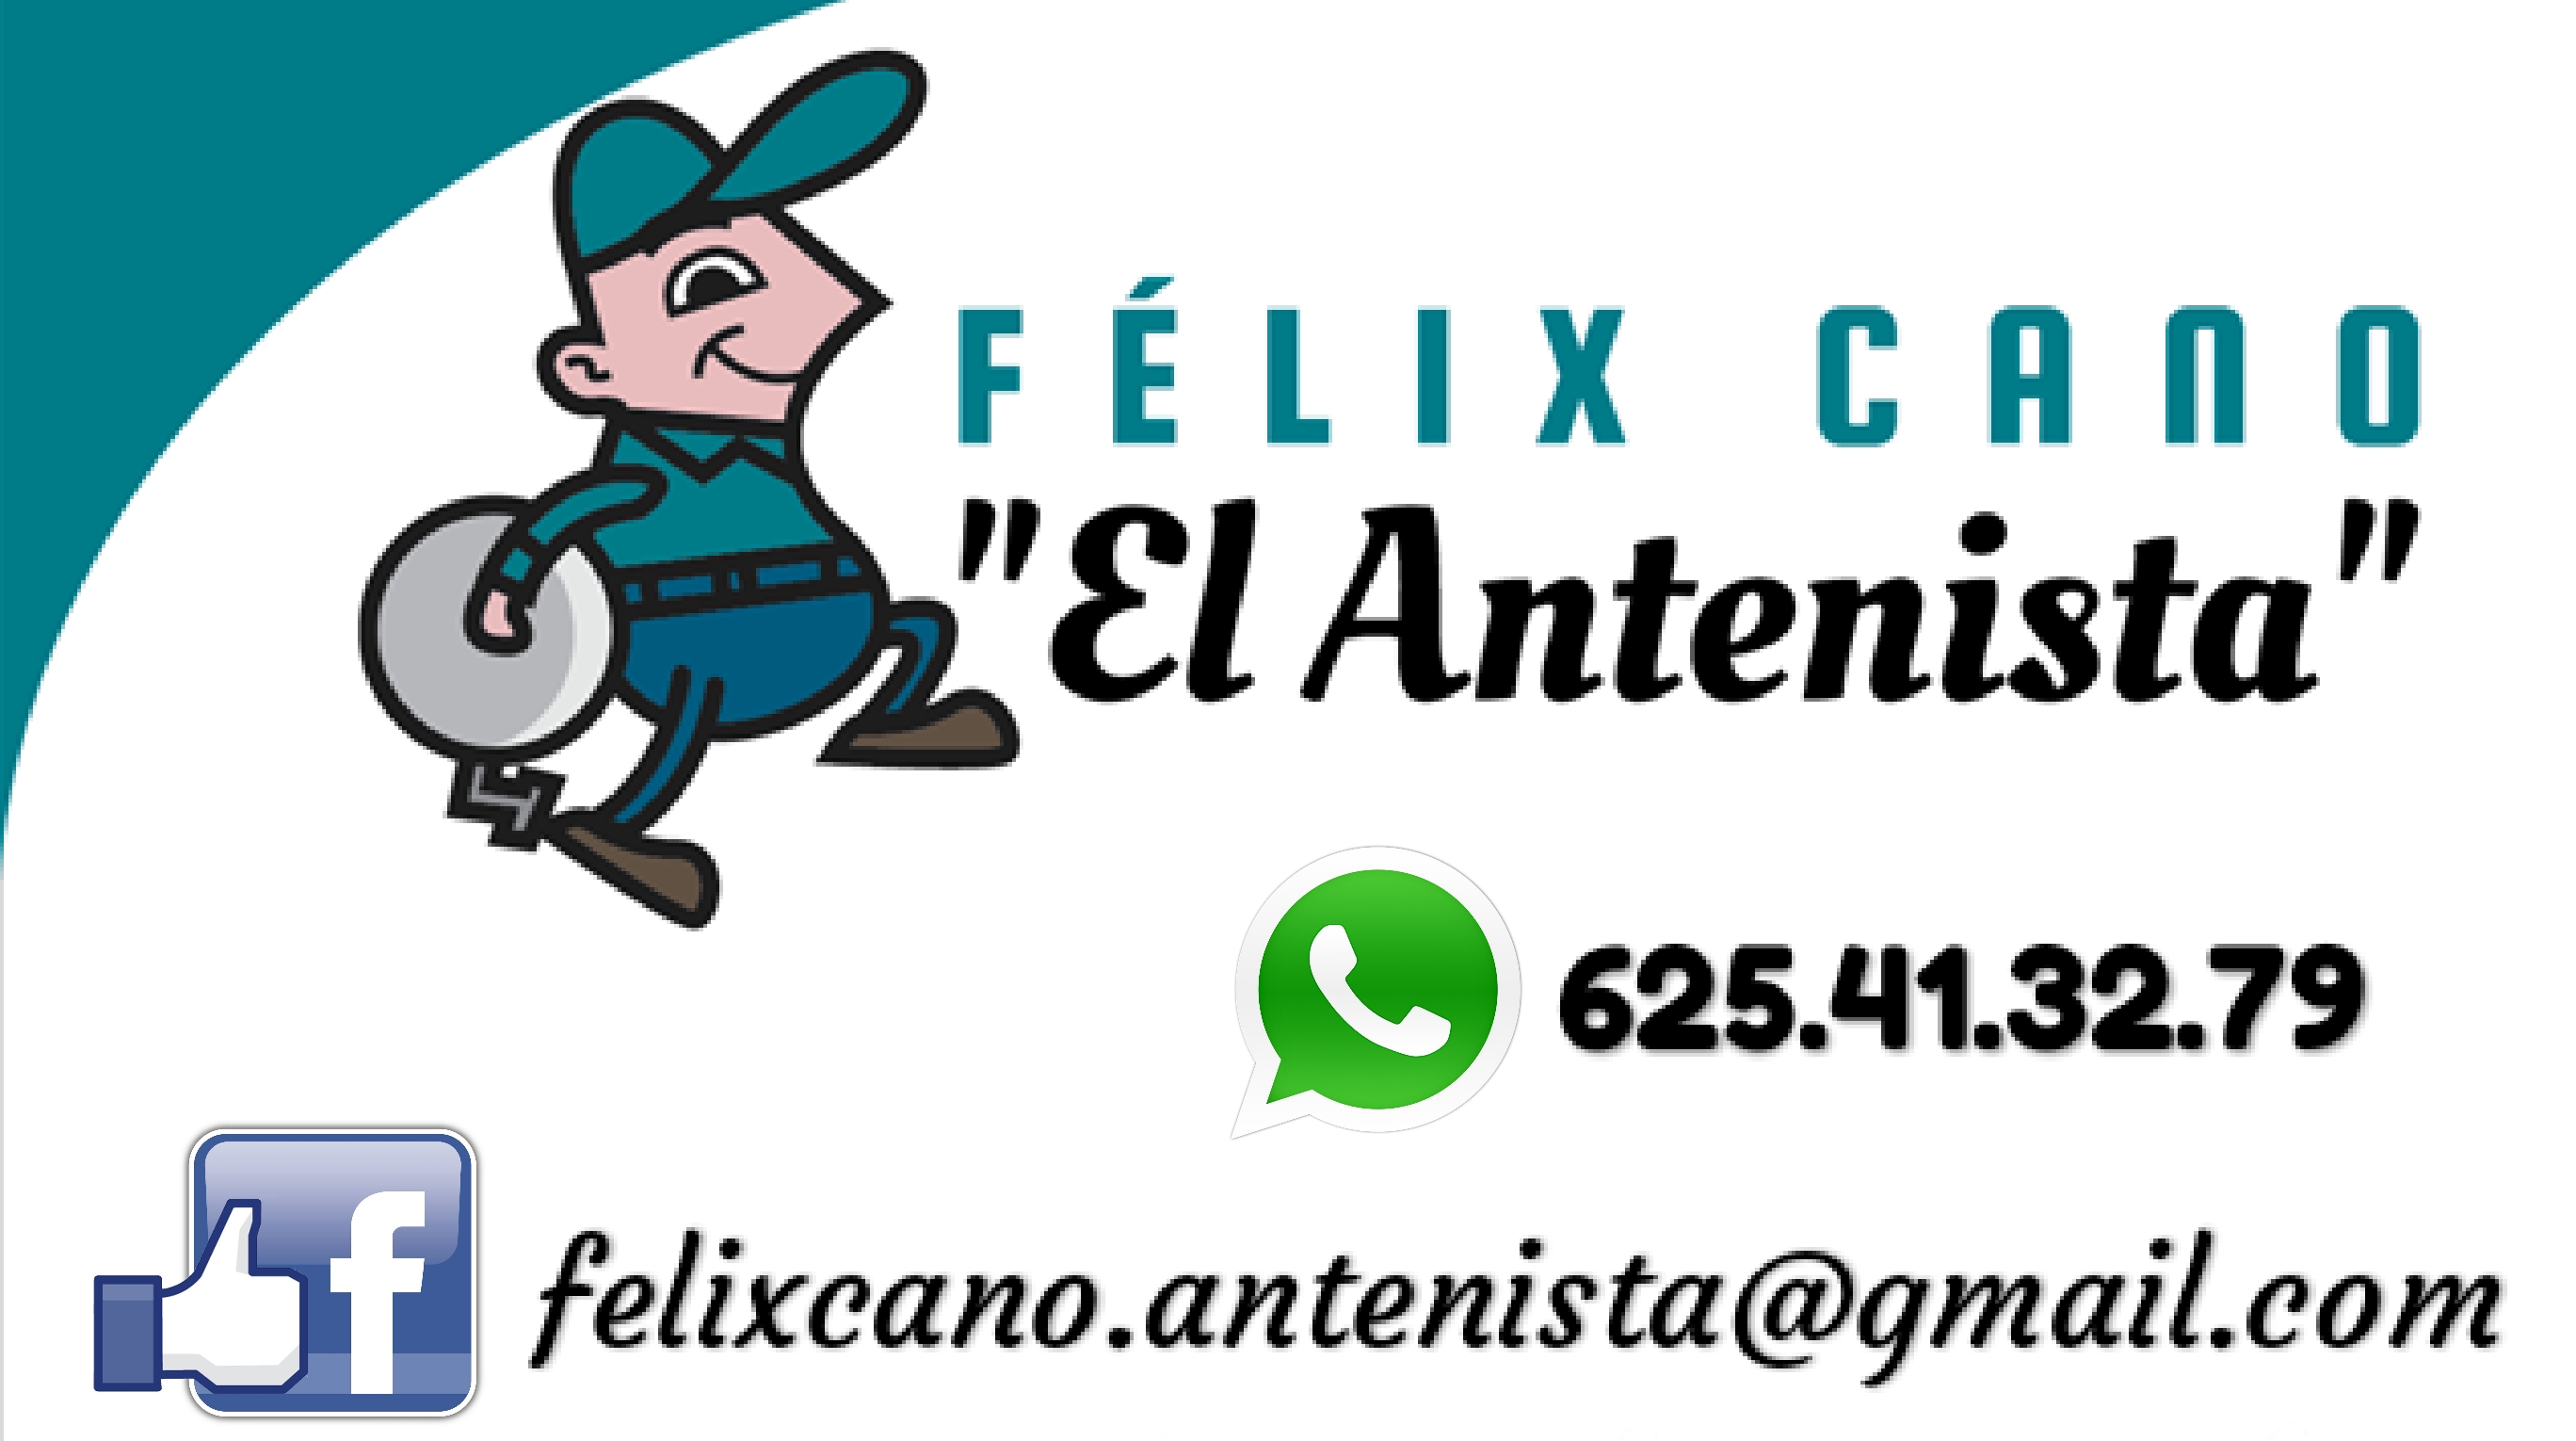 Llamar a Félix Cano El Antenista 